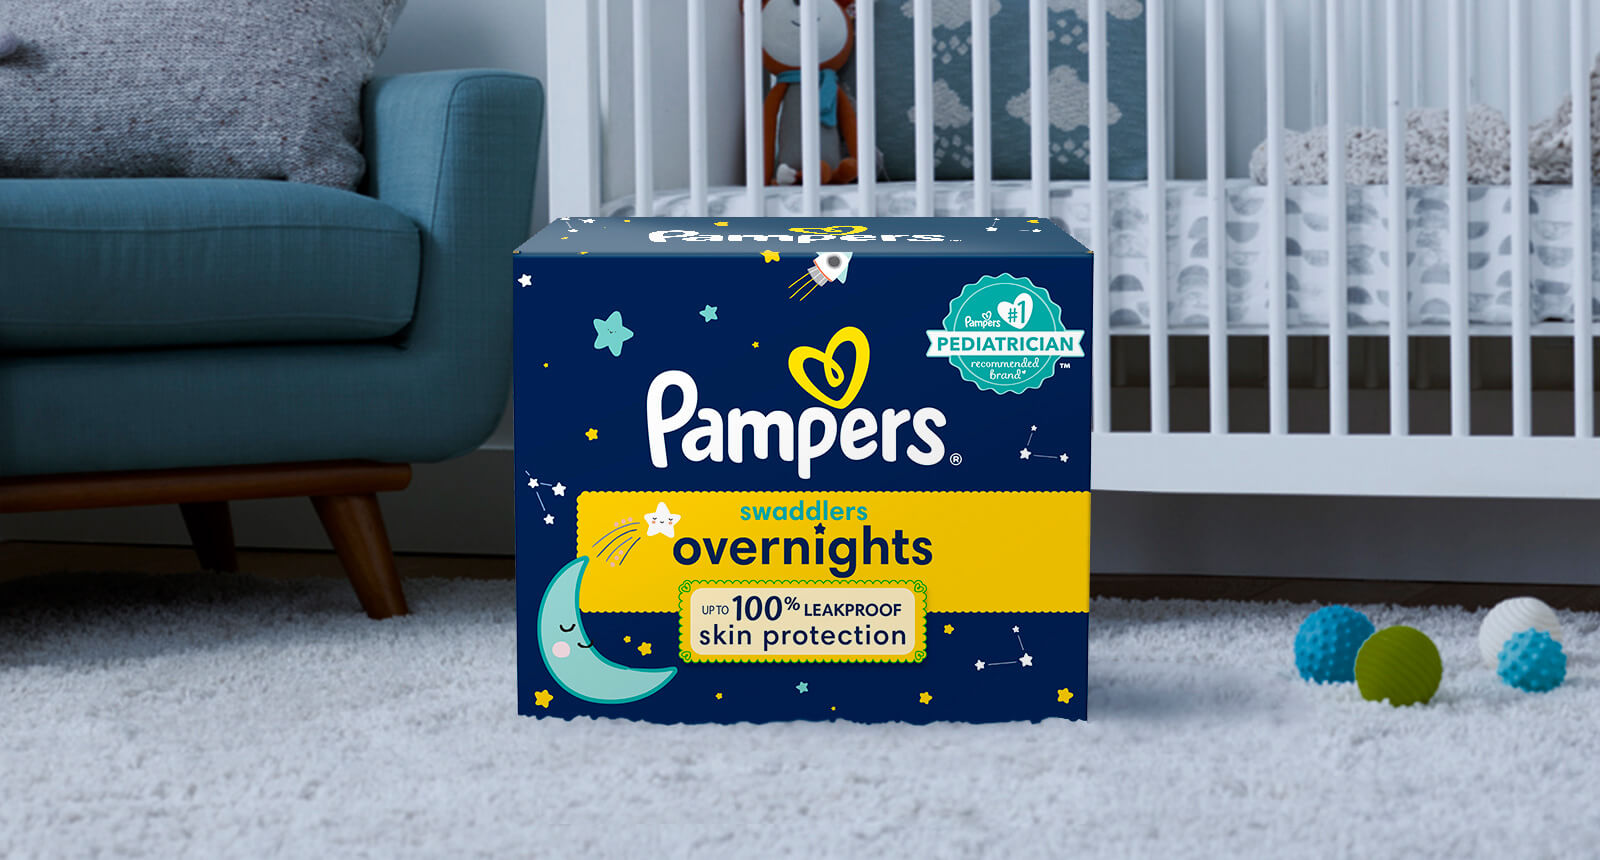  Pañales nocturnos talla 6, 42 unidades y toallitas para bebé,  pañales y toallitas desechables Pampers Swaddlers Overnights, 12X Pop-Top  (672 unidades) : Todo lo demás